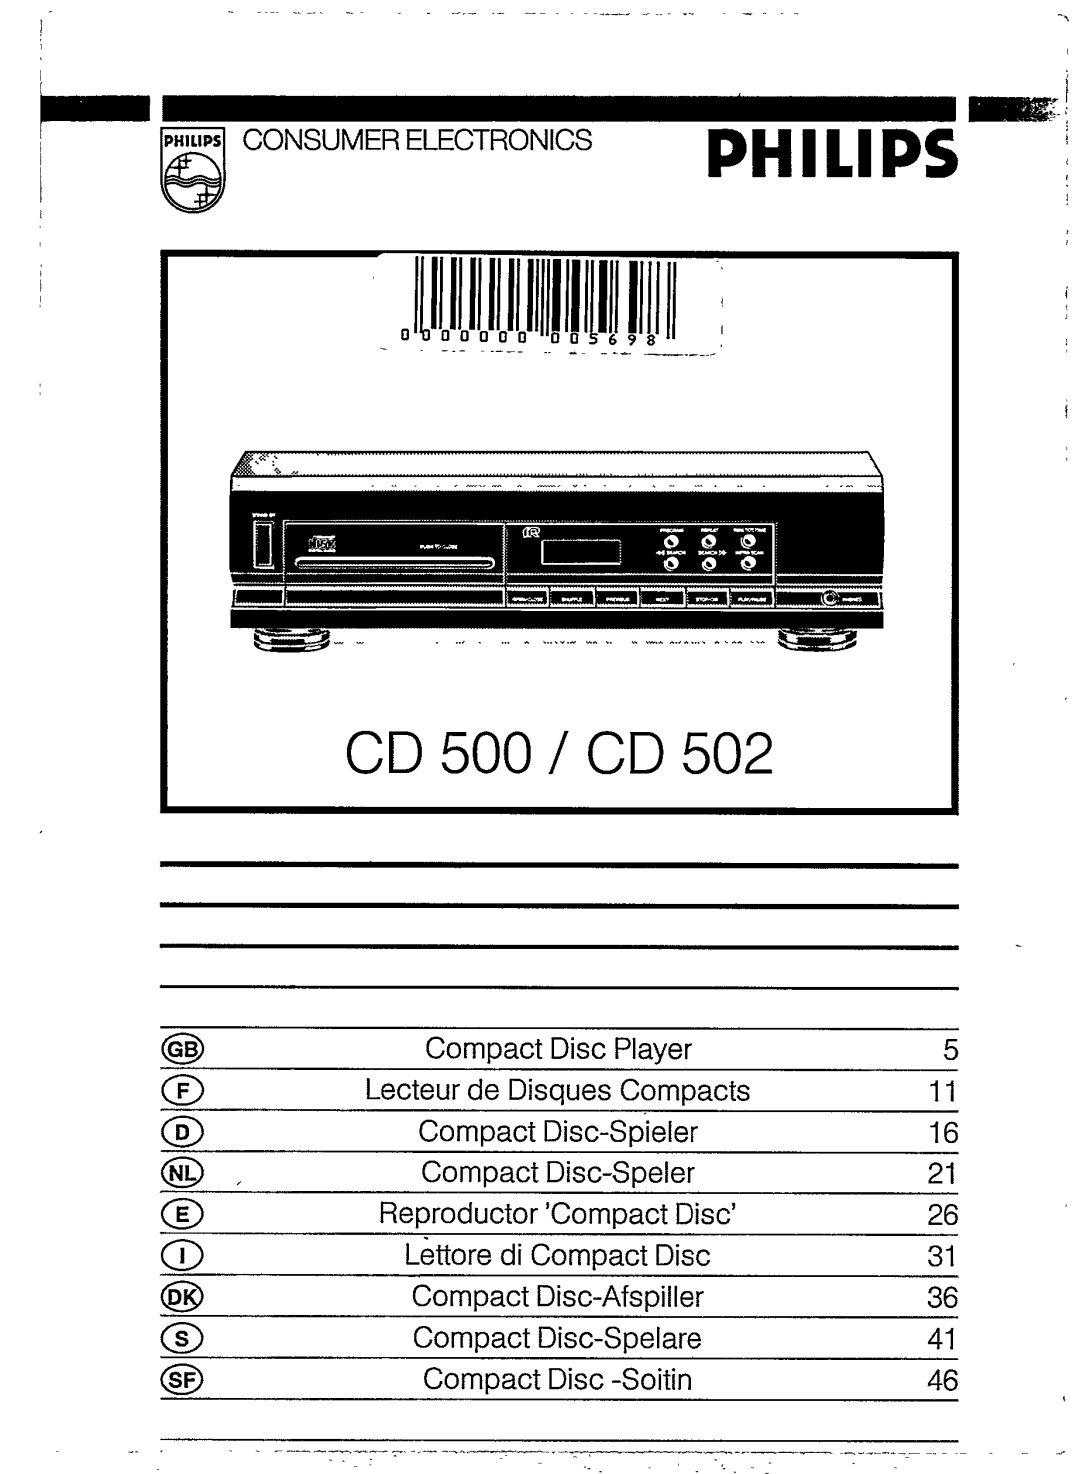 Philips CD 500, CD 502 manual 